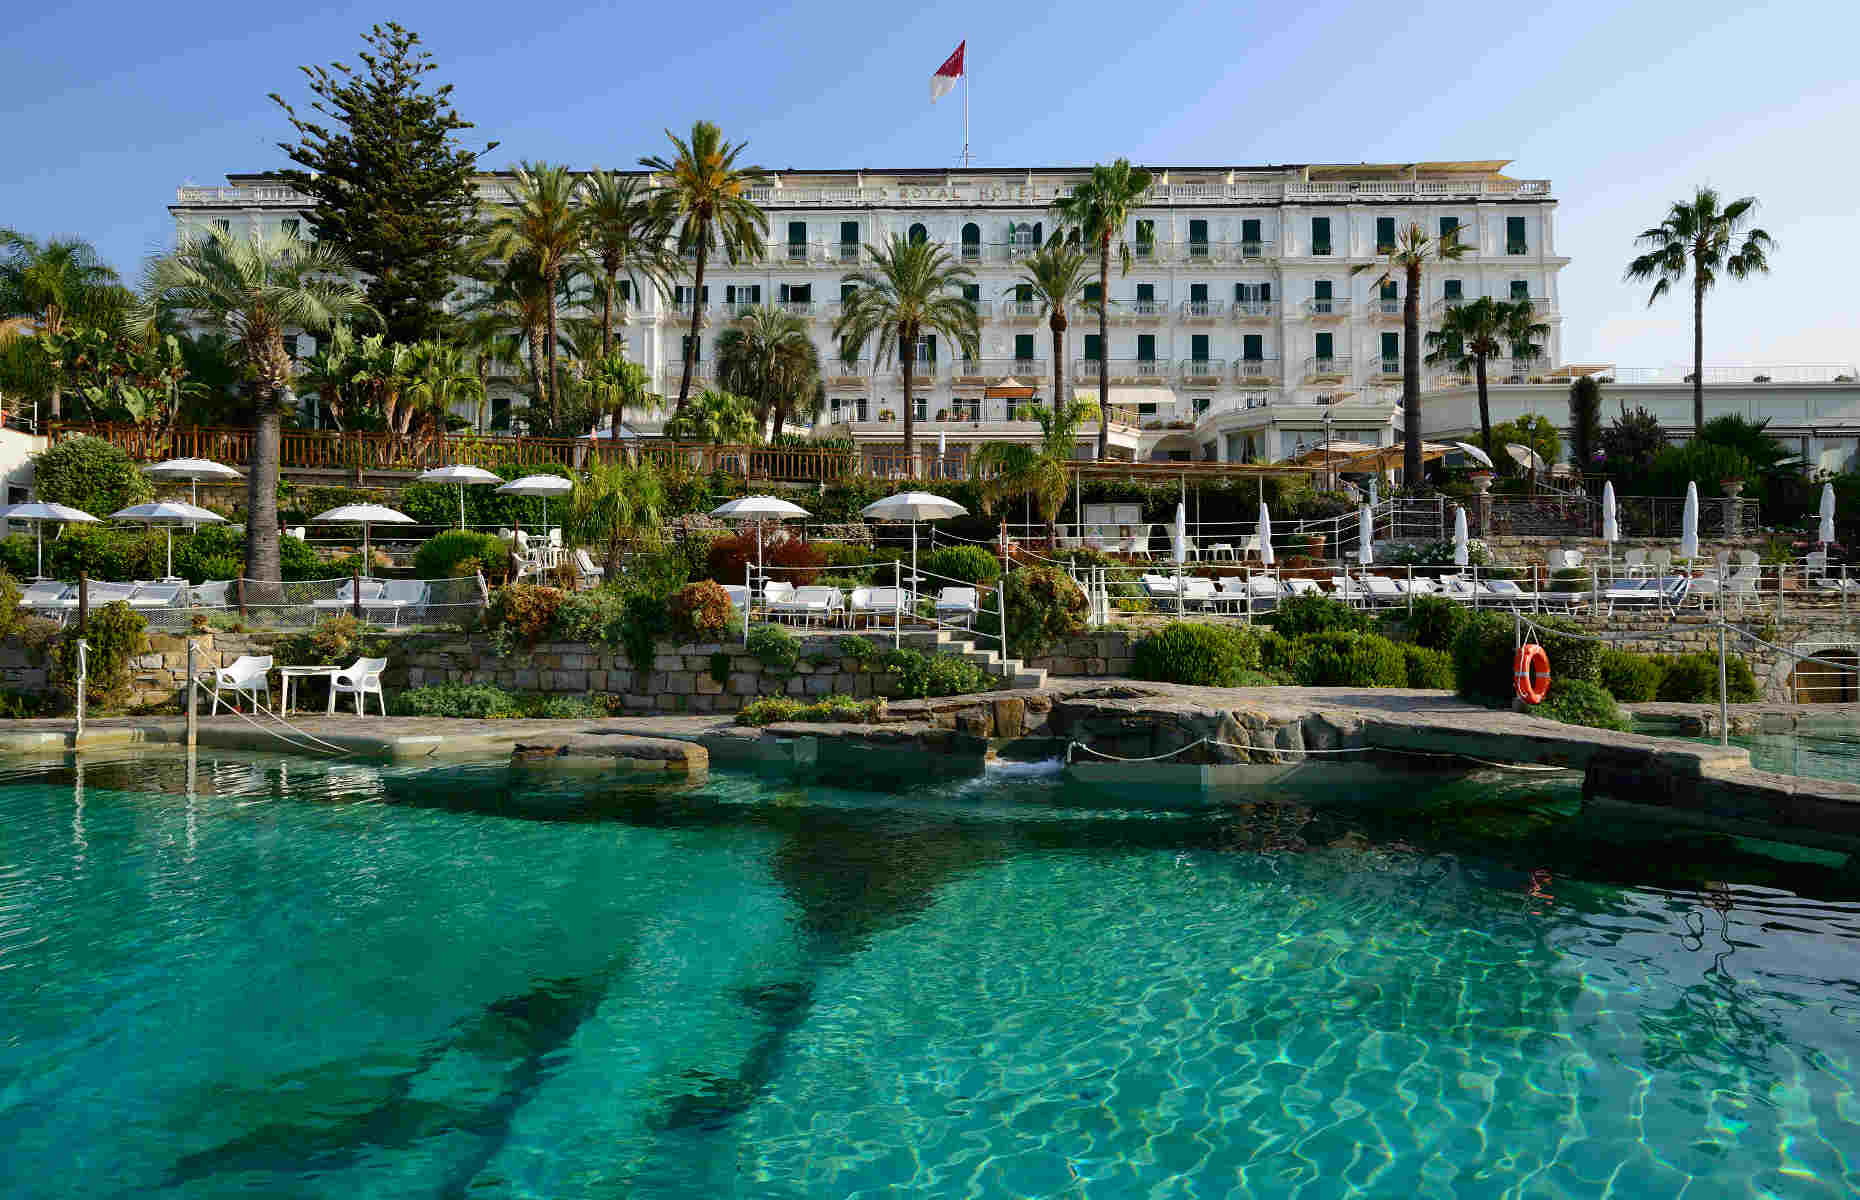 Royal Hotel Sanremo - Hôtel Sanremo, Italie